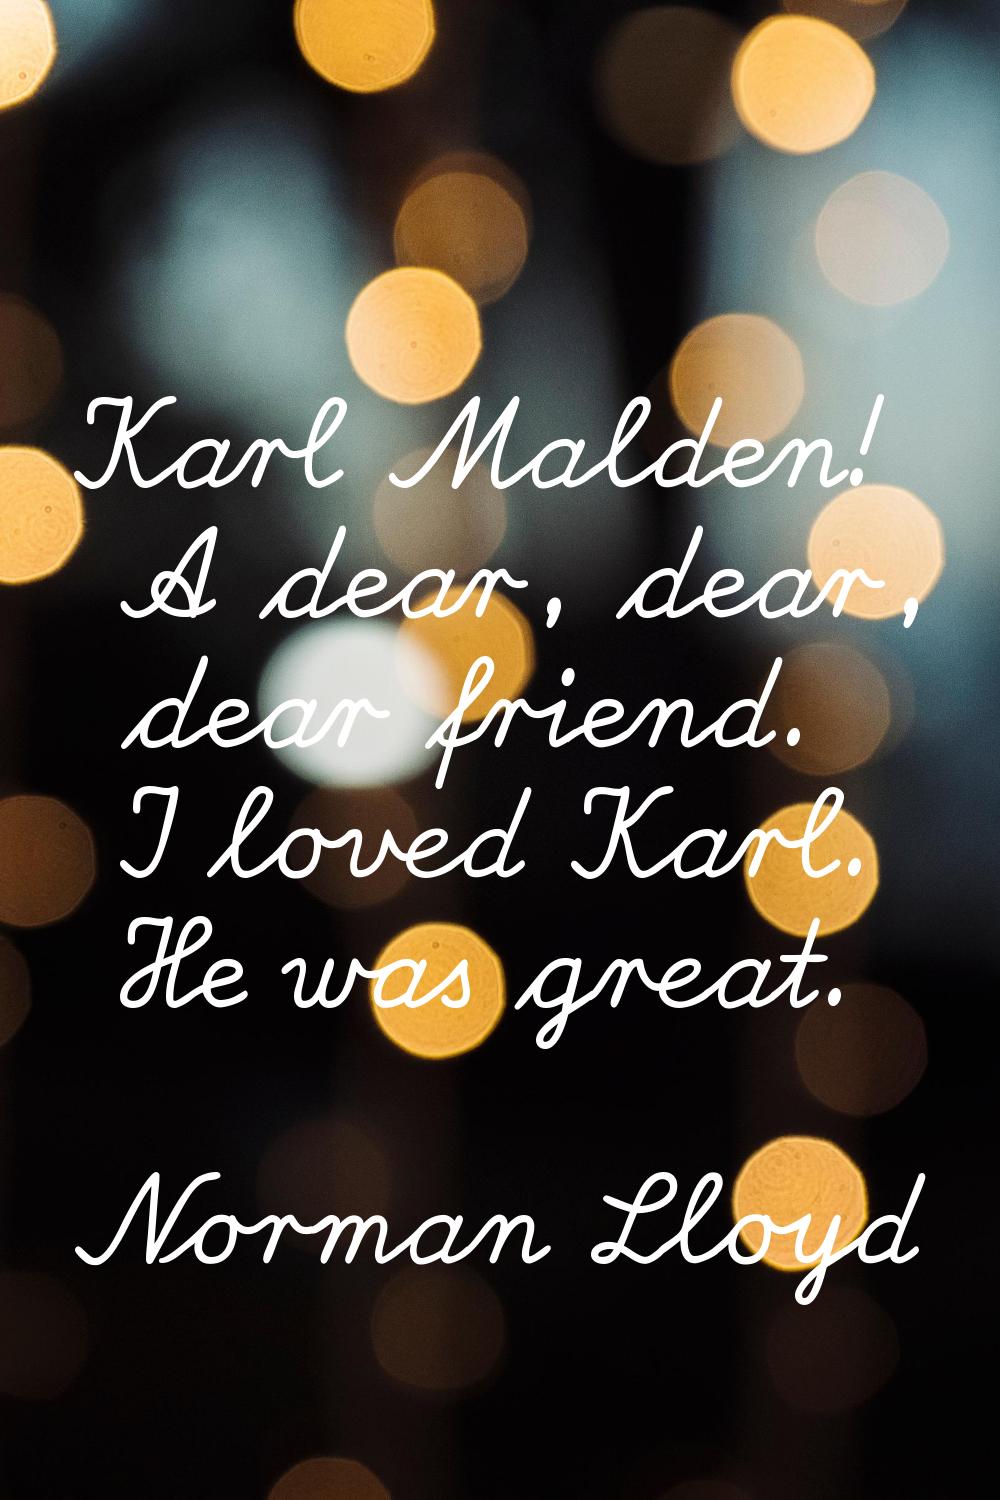 Karl Malden! A dear, dear, dear friend. I loved Karl. He was great.